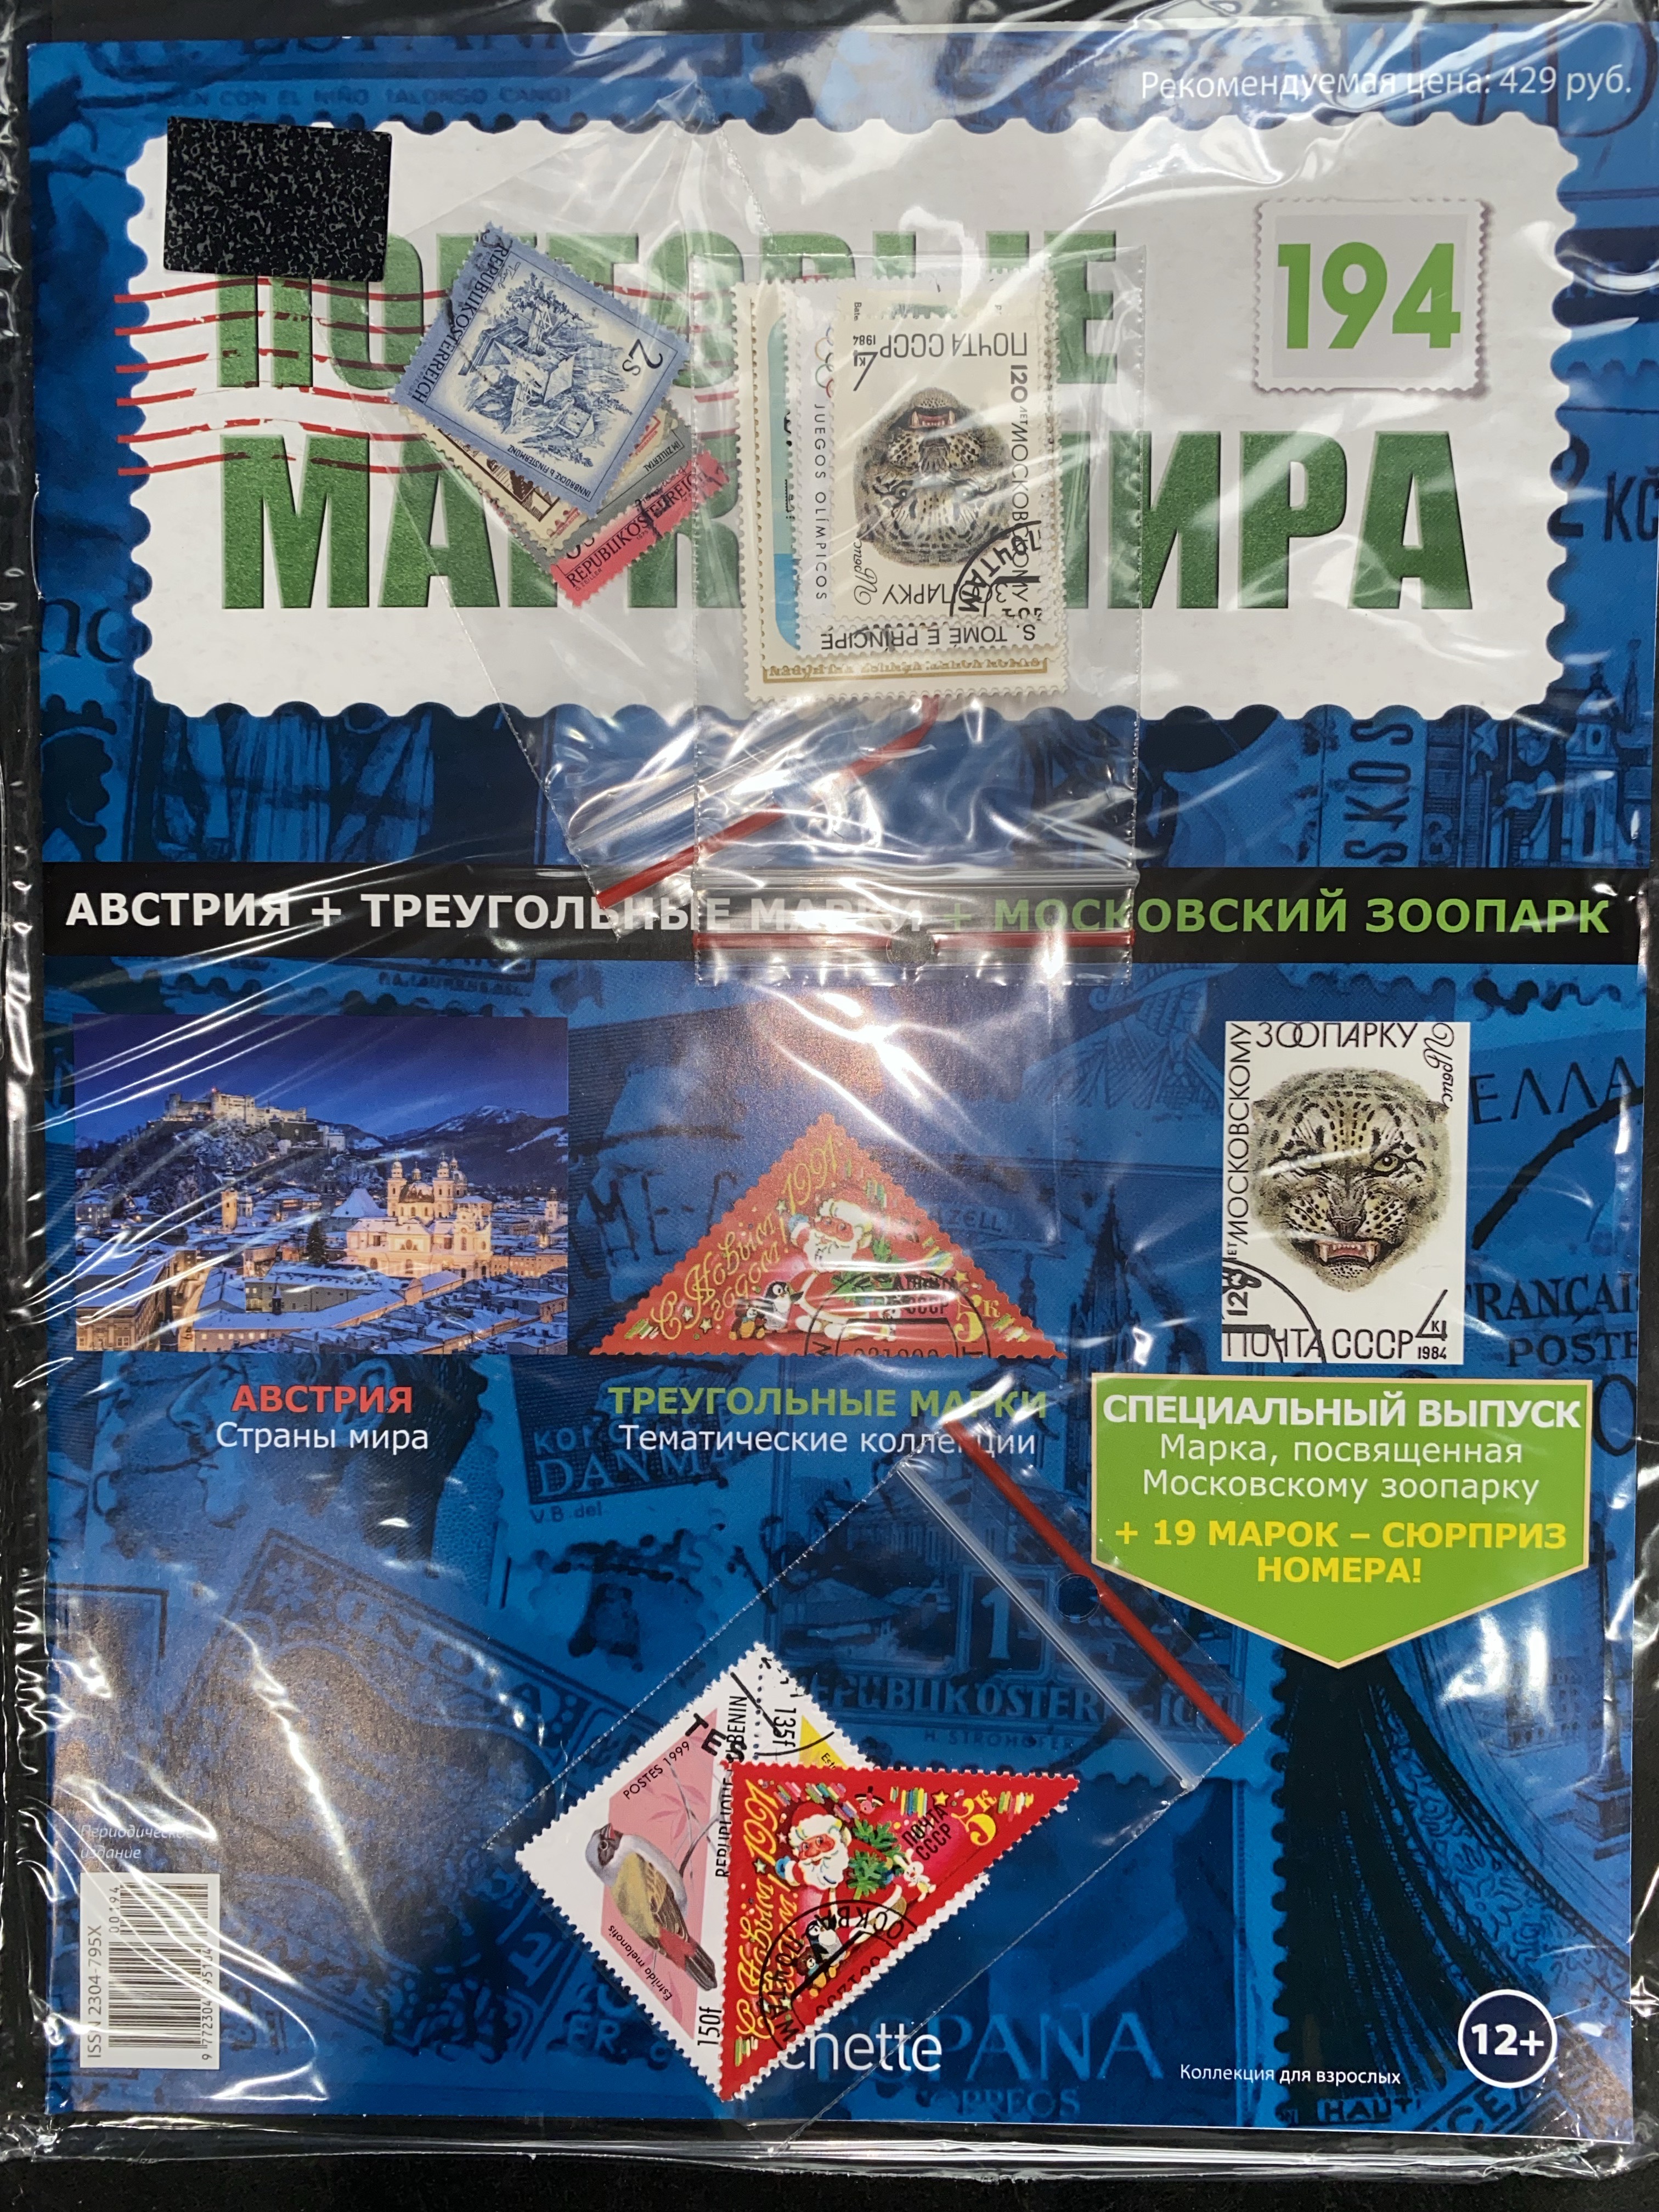 №194 Австрия+Треугольные марки+Московский зоопарк+Лист для хранения марок